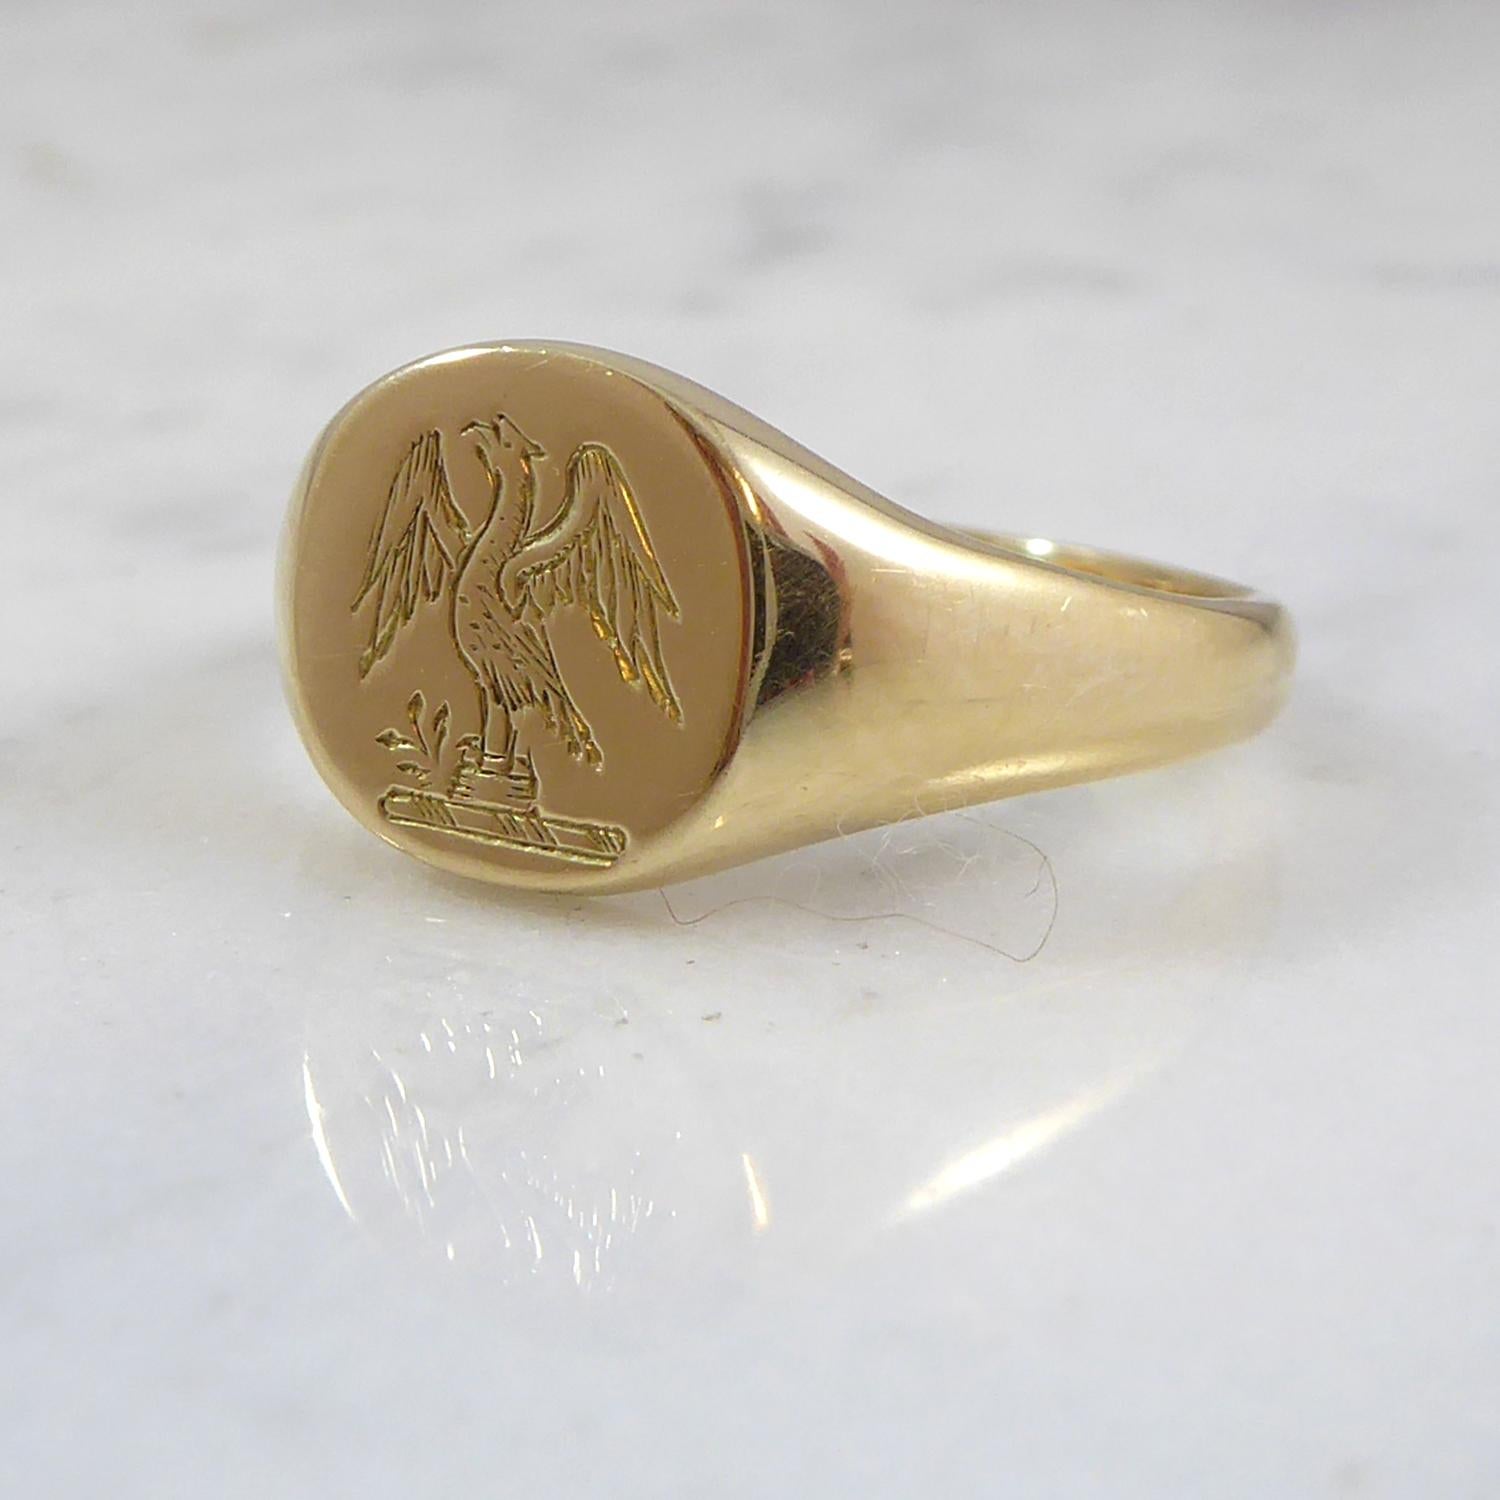 George V Vintage Gold Signet Ring with Engraved Crest Design